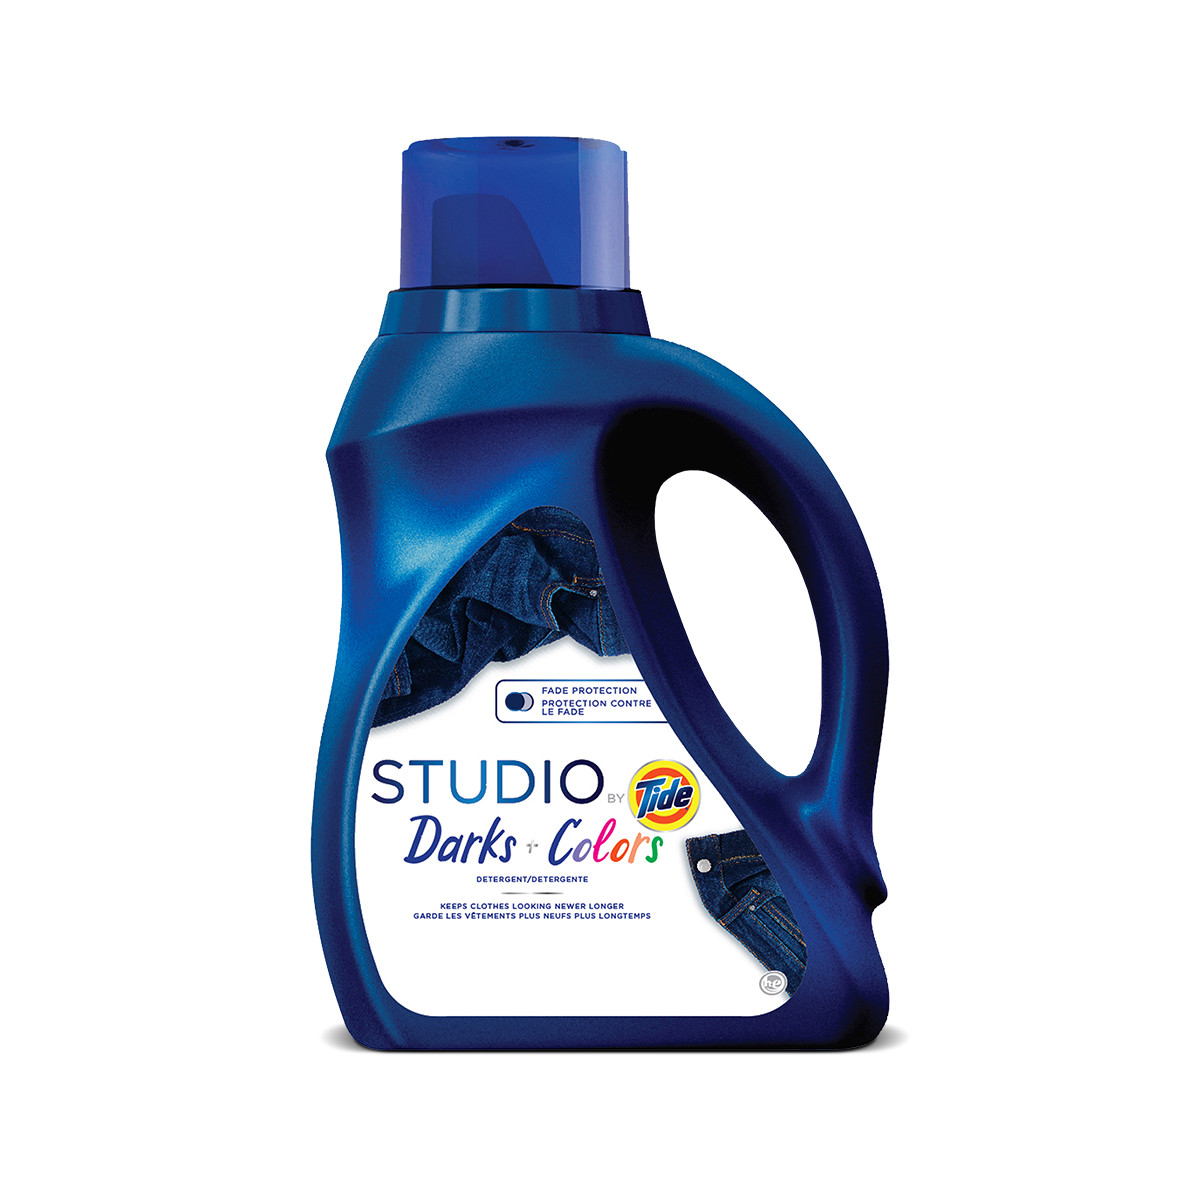 Studio by Tide Darks & Colors Liquid Laundry Detergent - 75 ounces, color blue